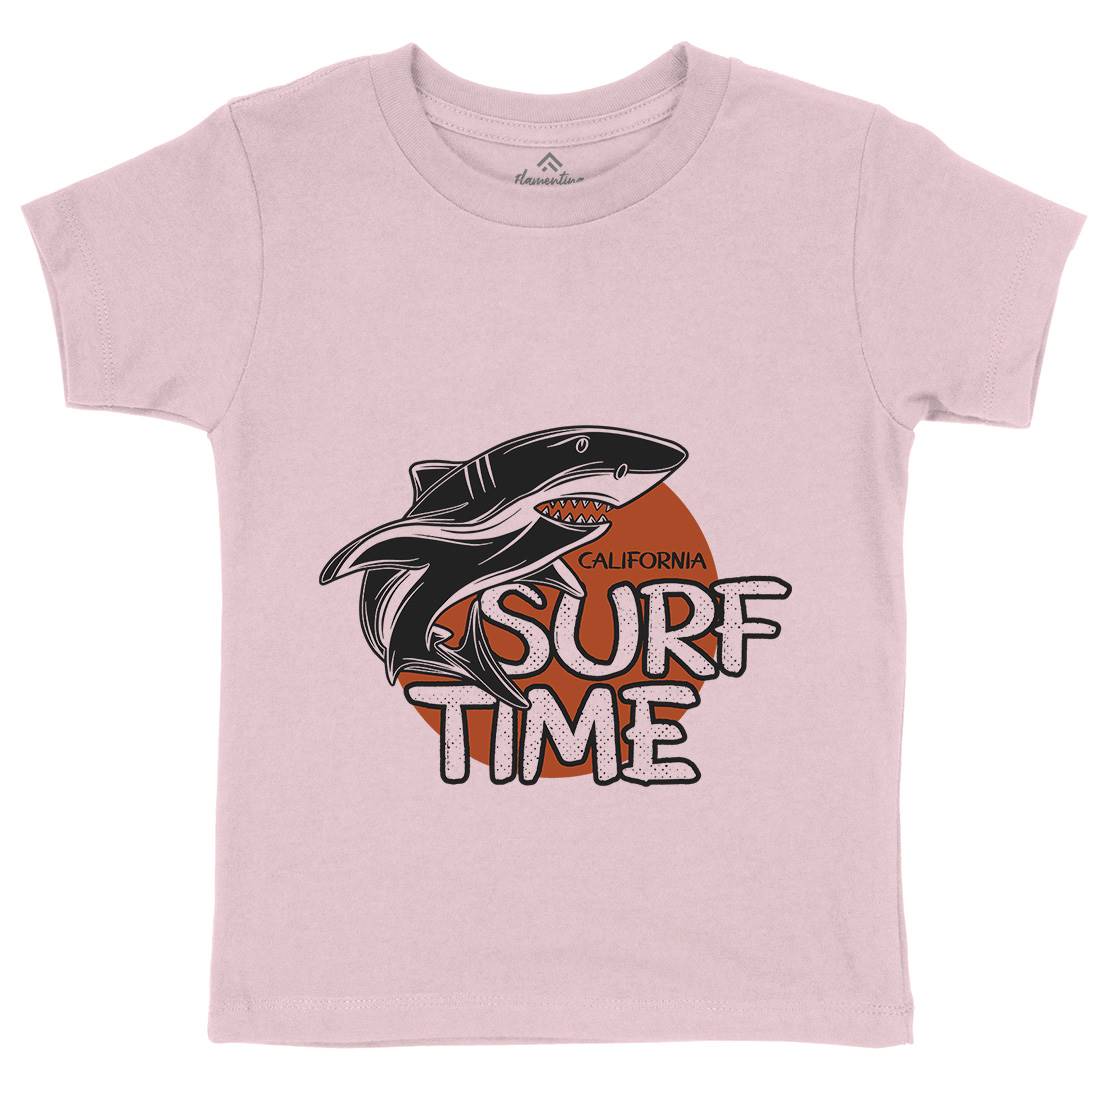 Shark Time Kids Crew Neck T-Shirt Navy D969